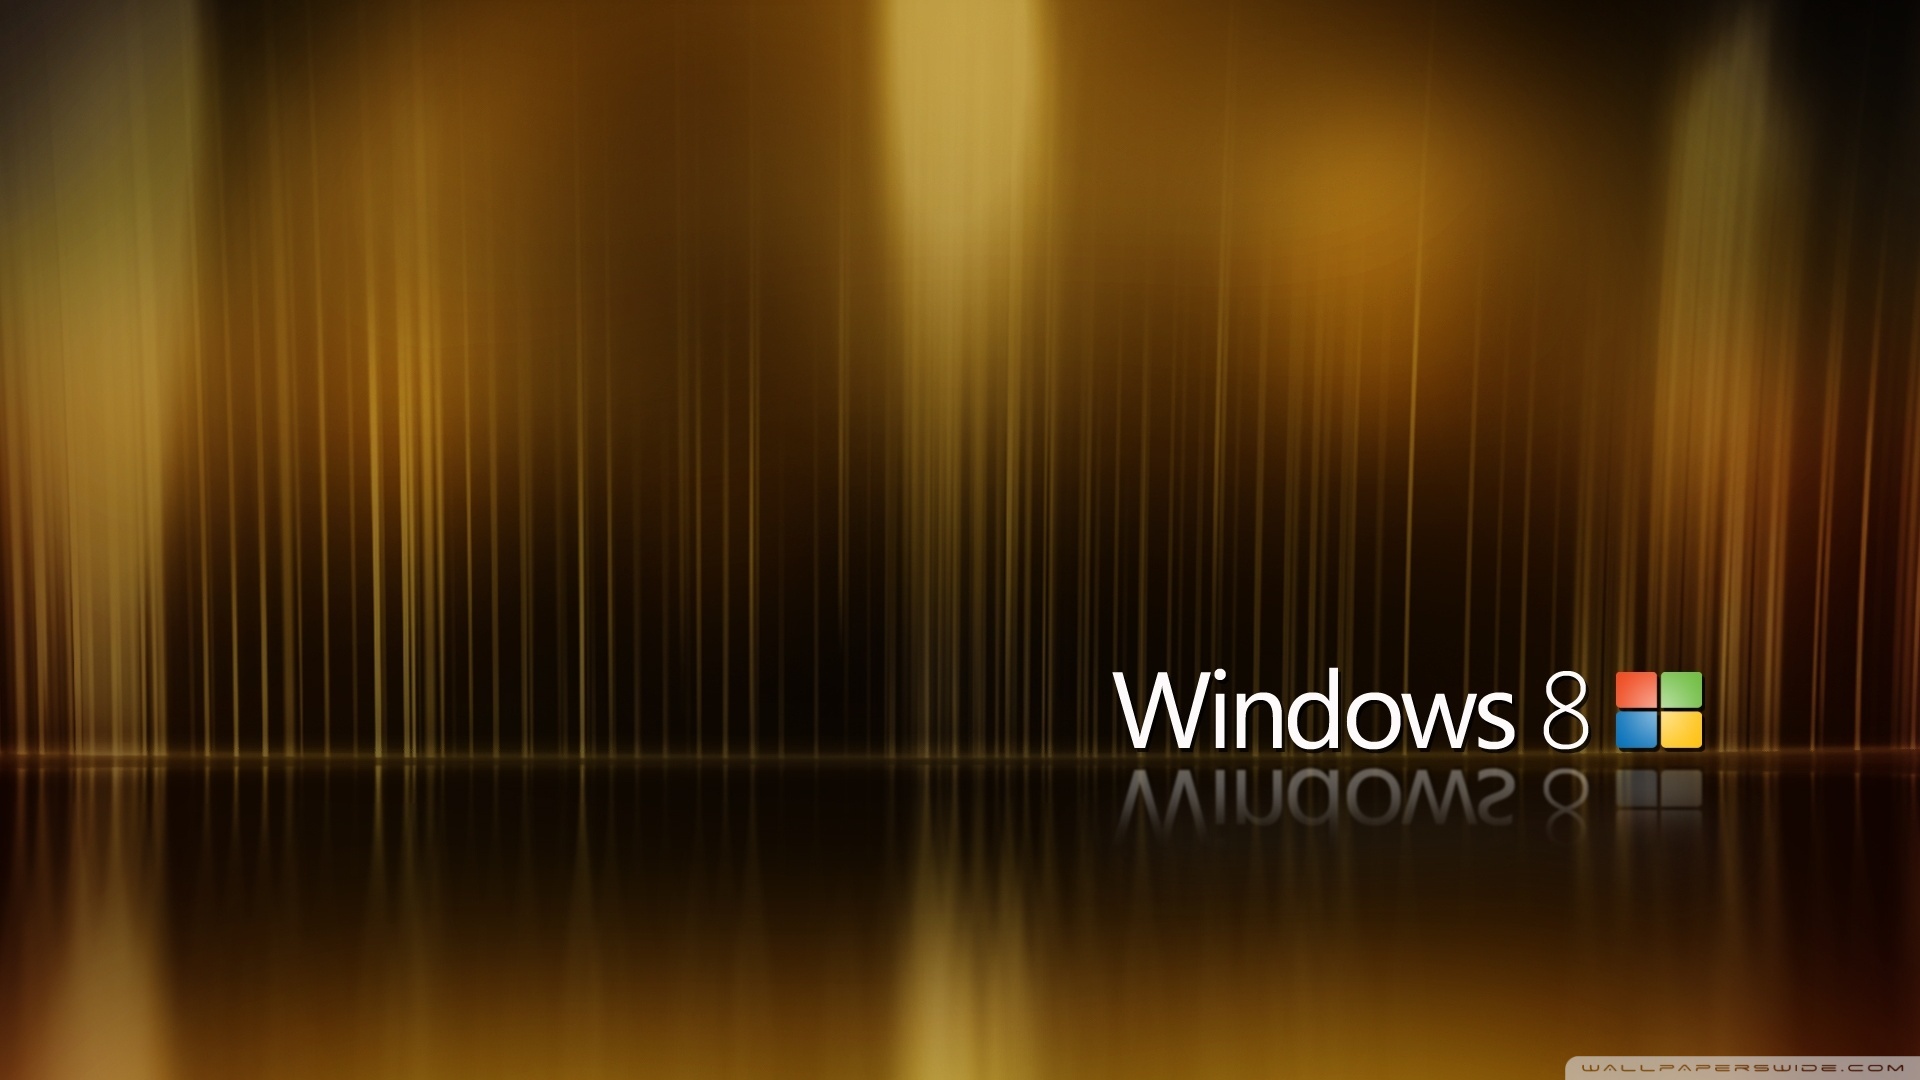 Hình nền Windows 8 được thiết kế tối giản mà đẹp mắt, phù hợp cho mọi kiểu thiết bị. Nó mang đến cho bạn cảm giác sạch sẽ và hiện đại cho máy tính của bạn. Nhấp chuột để tải hình nền Windows 8 mới nhất!